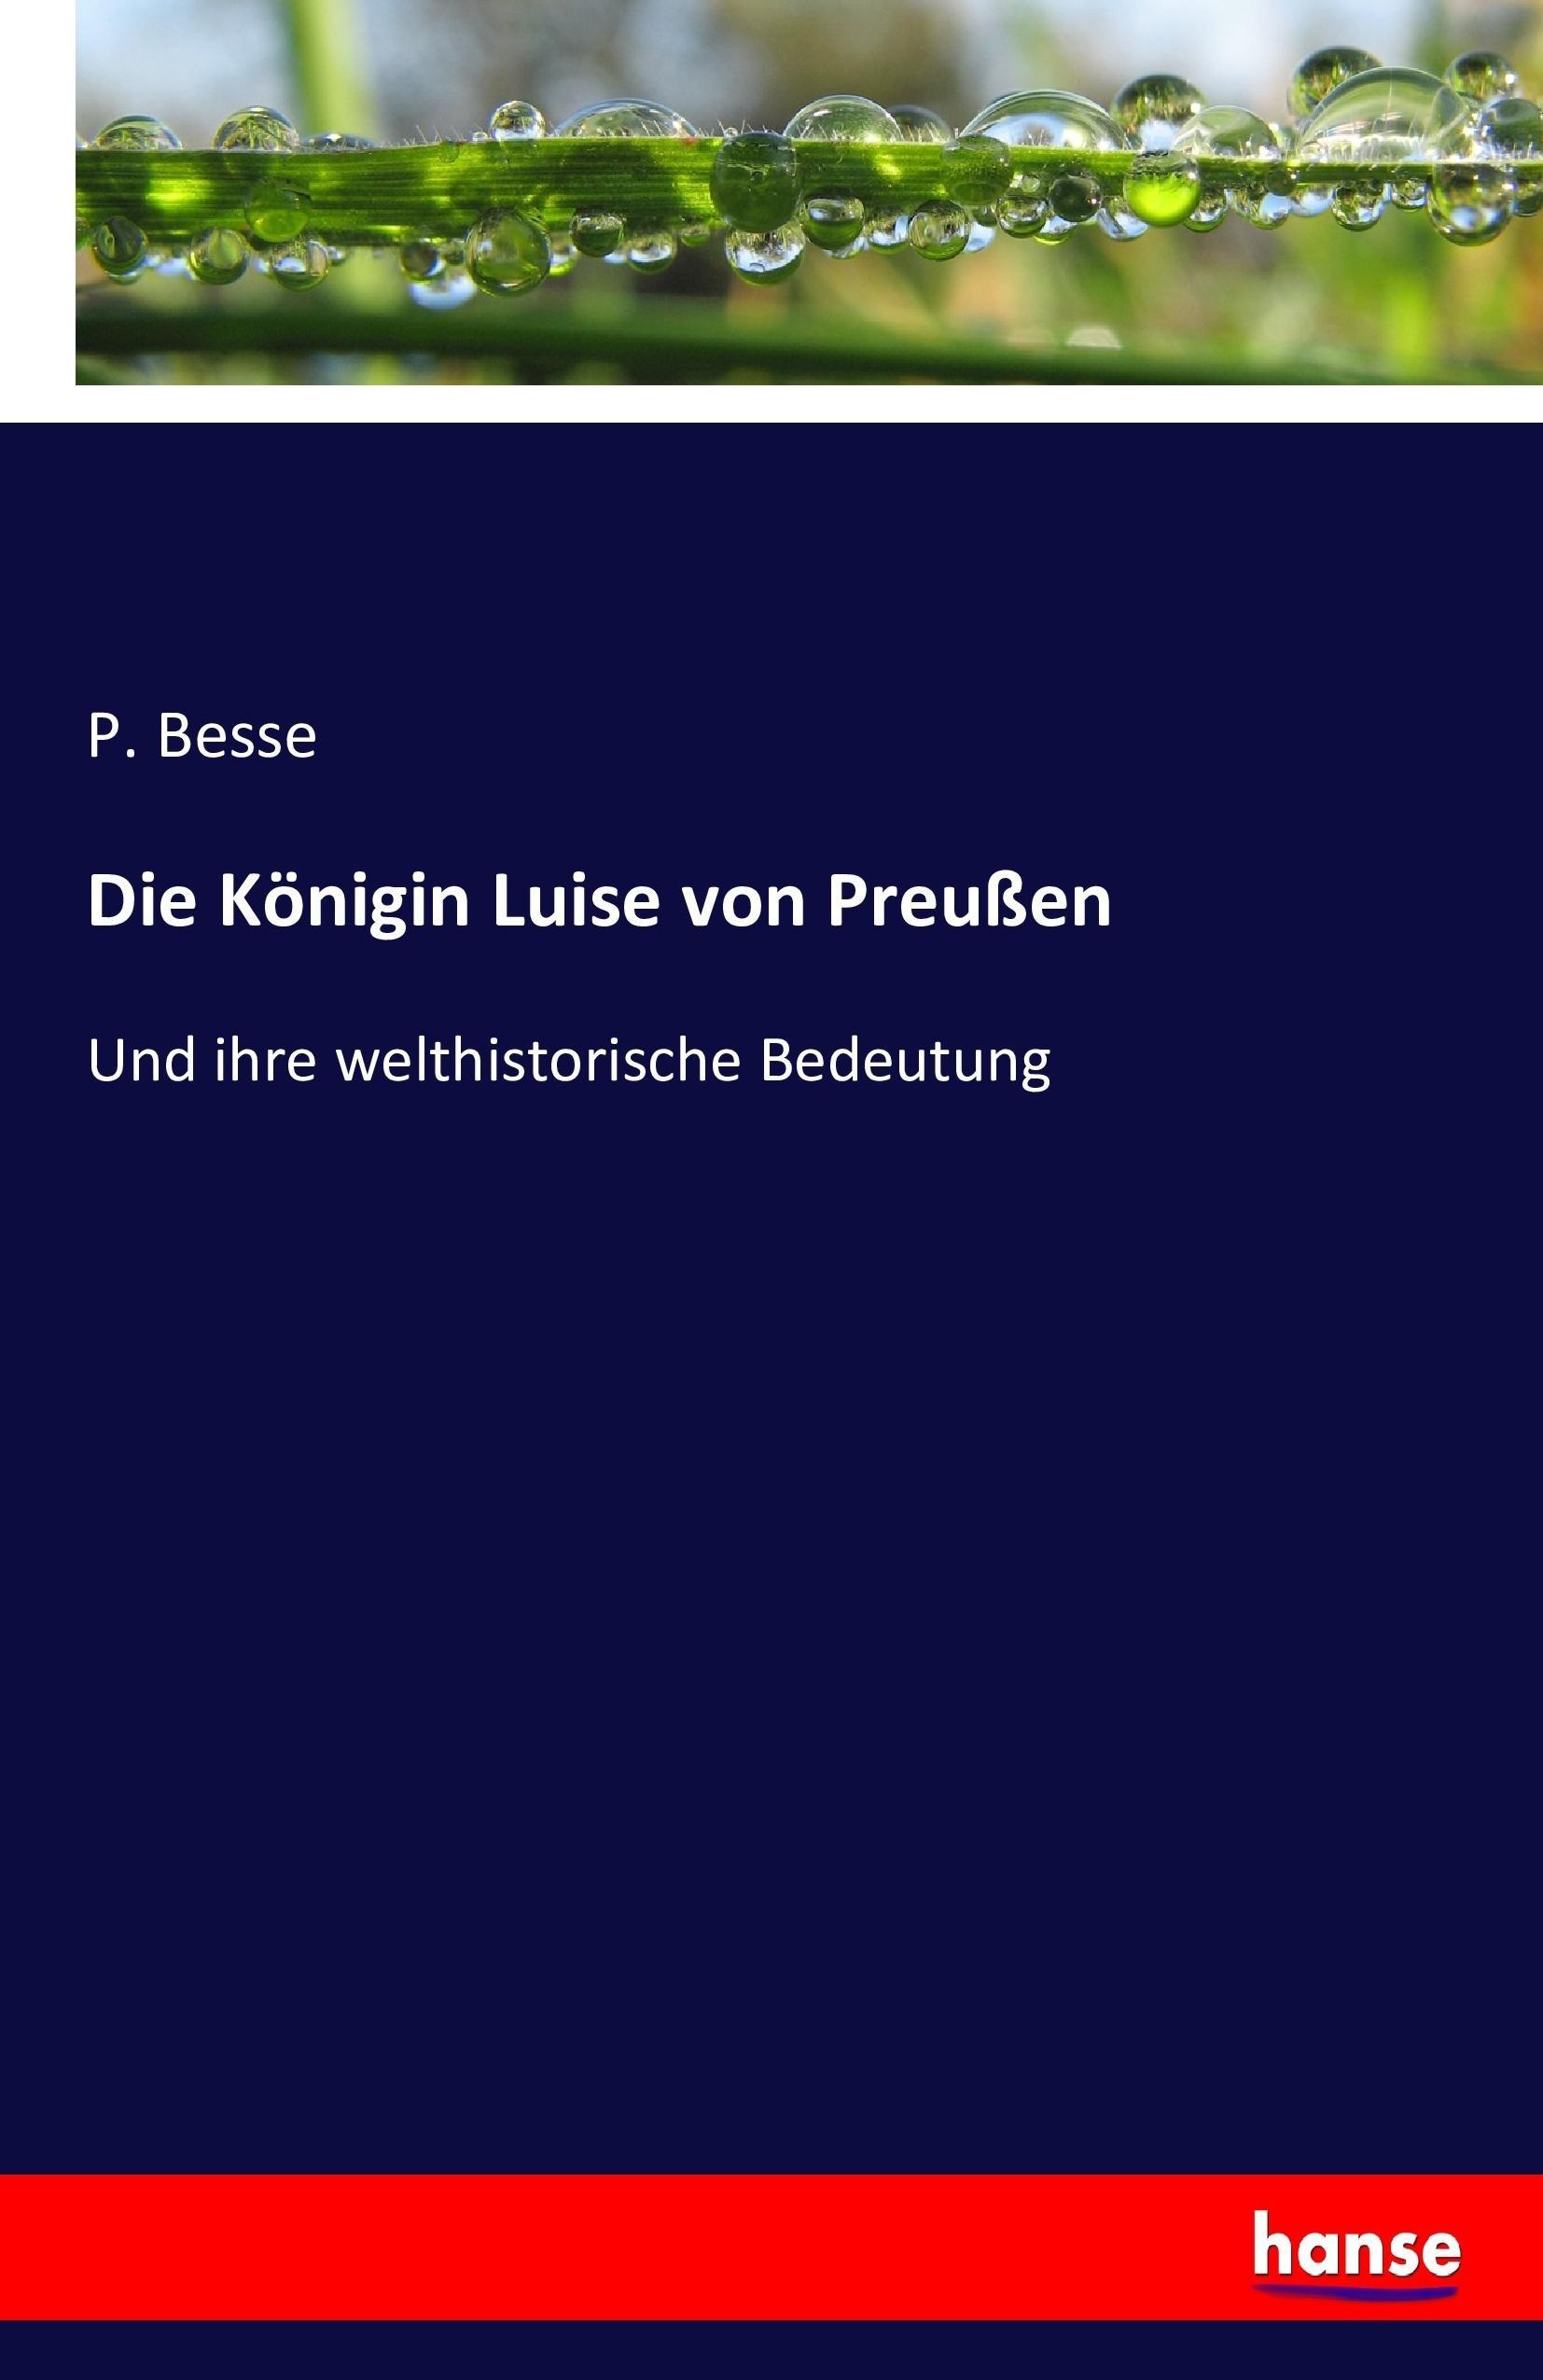 Die Königin Luise von Preußen | Und ihre welthistorische Bedeutung | P. Besse | Taschenbuch | Paperback | 72 S. | Deutsch | 2017 | hansebooks | EAN 9783743404847 - Besse, P.